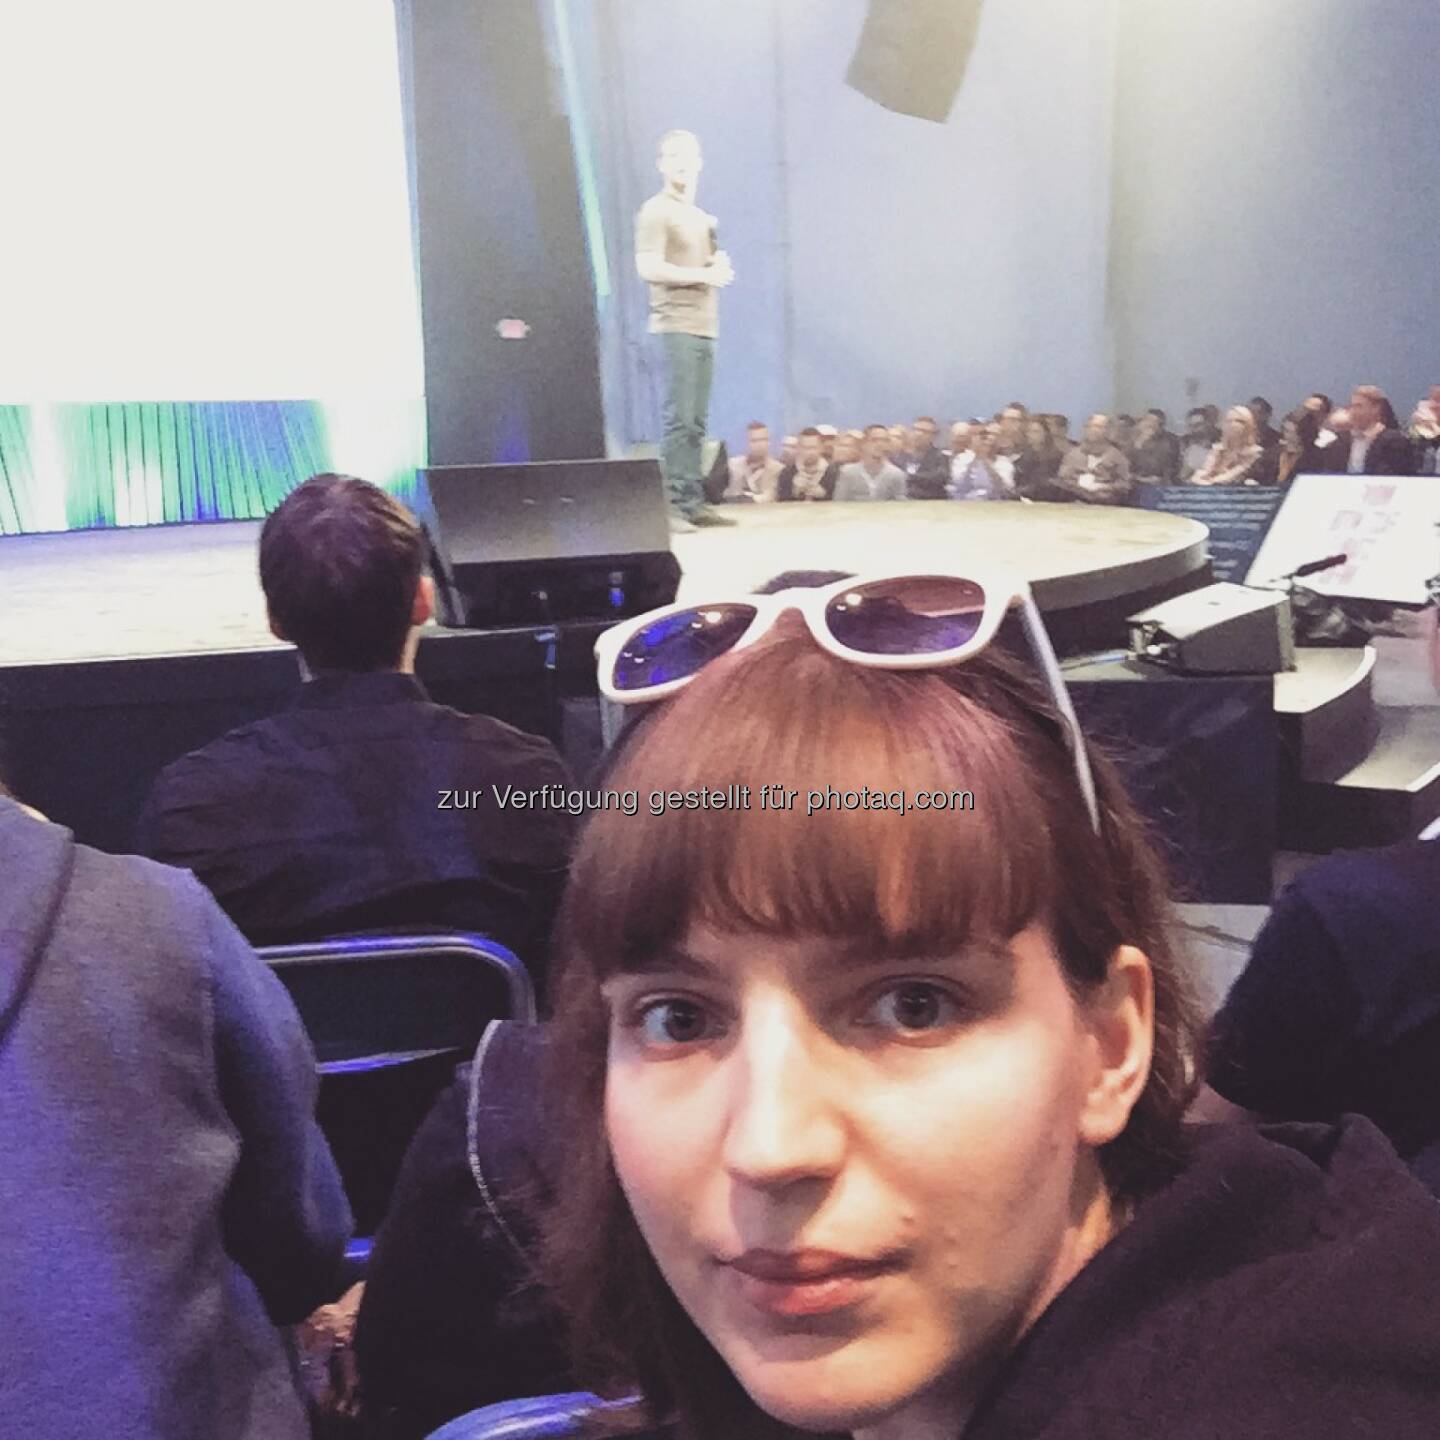 Ein Selfie mit Mark Zuckerberg. Kann man mal machen. - Teresa Hammerl, Facebook F8 2015 http://www.fillmore.at/lifestyle/das-war-mein-tag-auf-der-facebook-konferenz-f8/